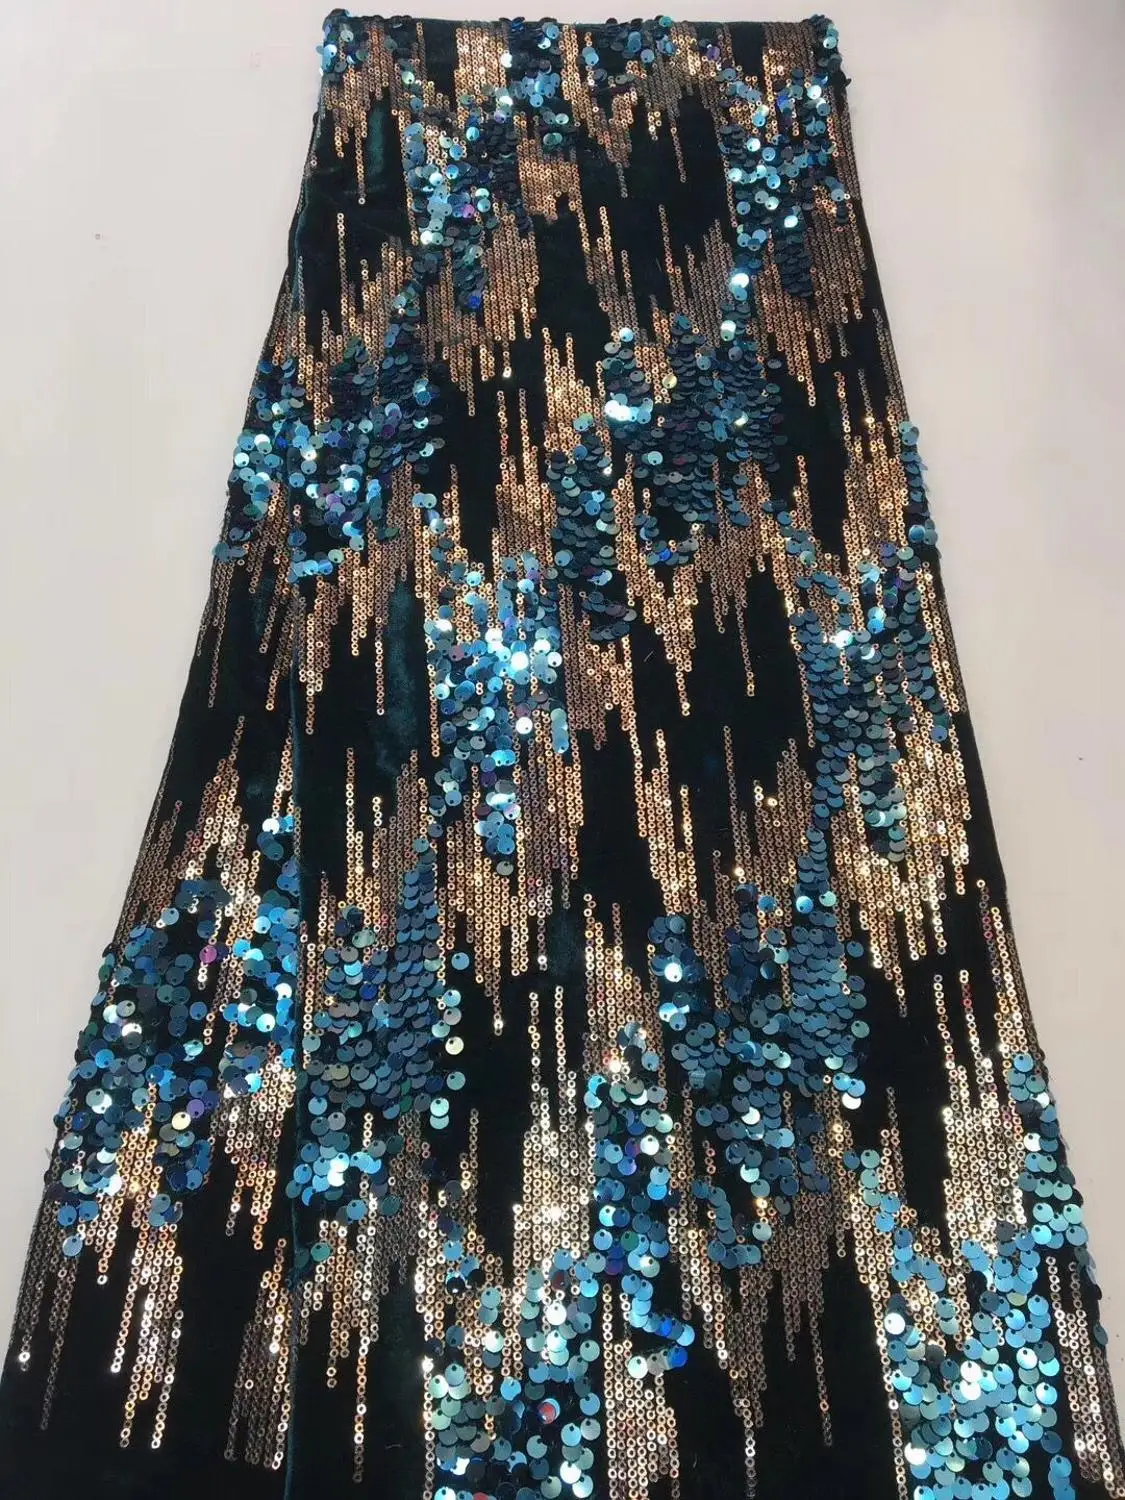 Sunny Нигерия новейший дизайн бархатная кружевная Ткань 5 ярдов/шт высокое качество африканские кружева с цветными блестками для вечерние платья